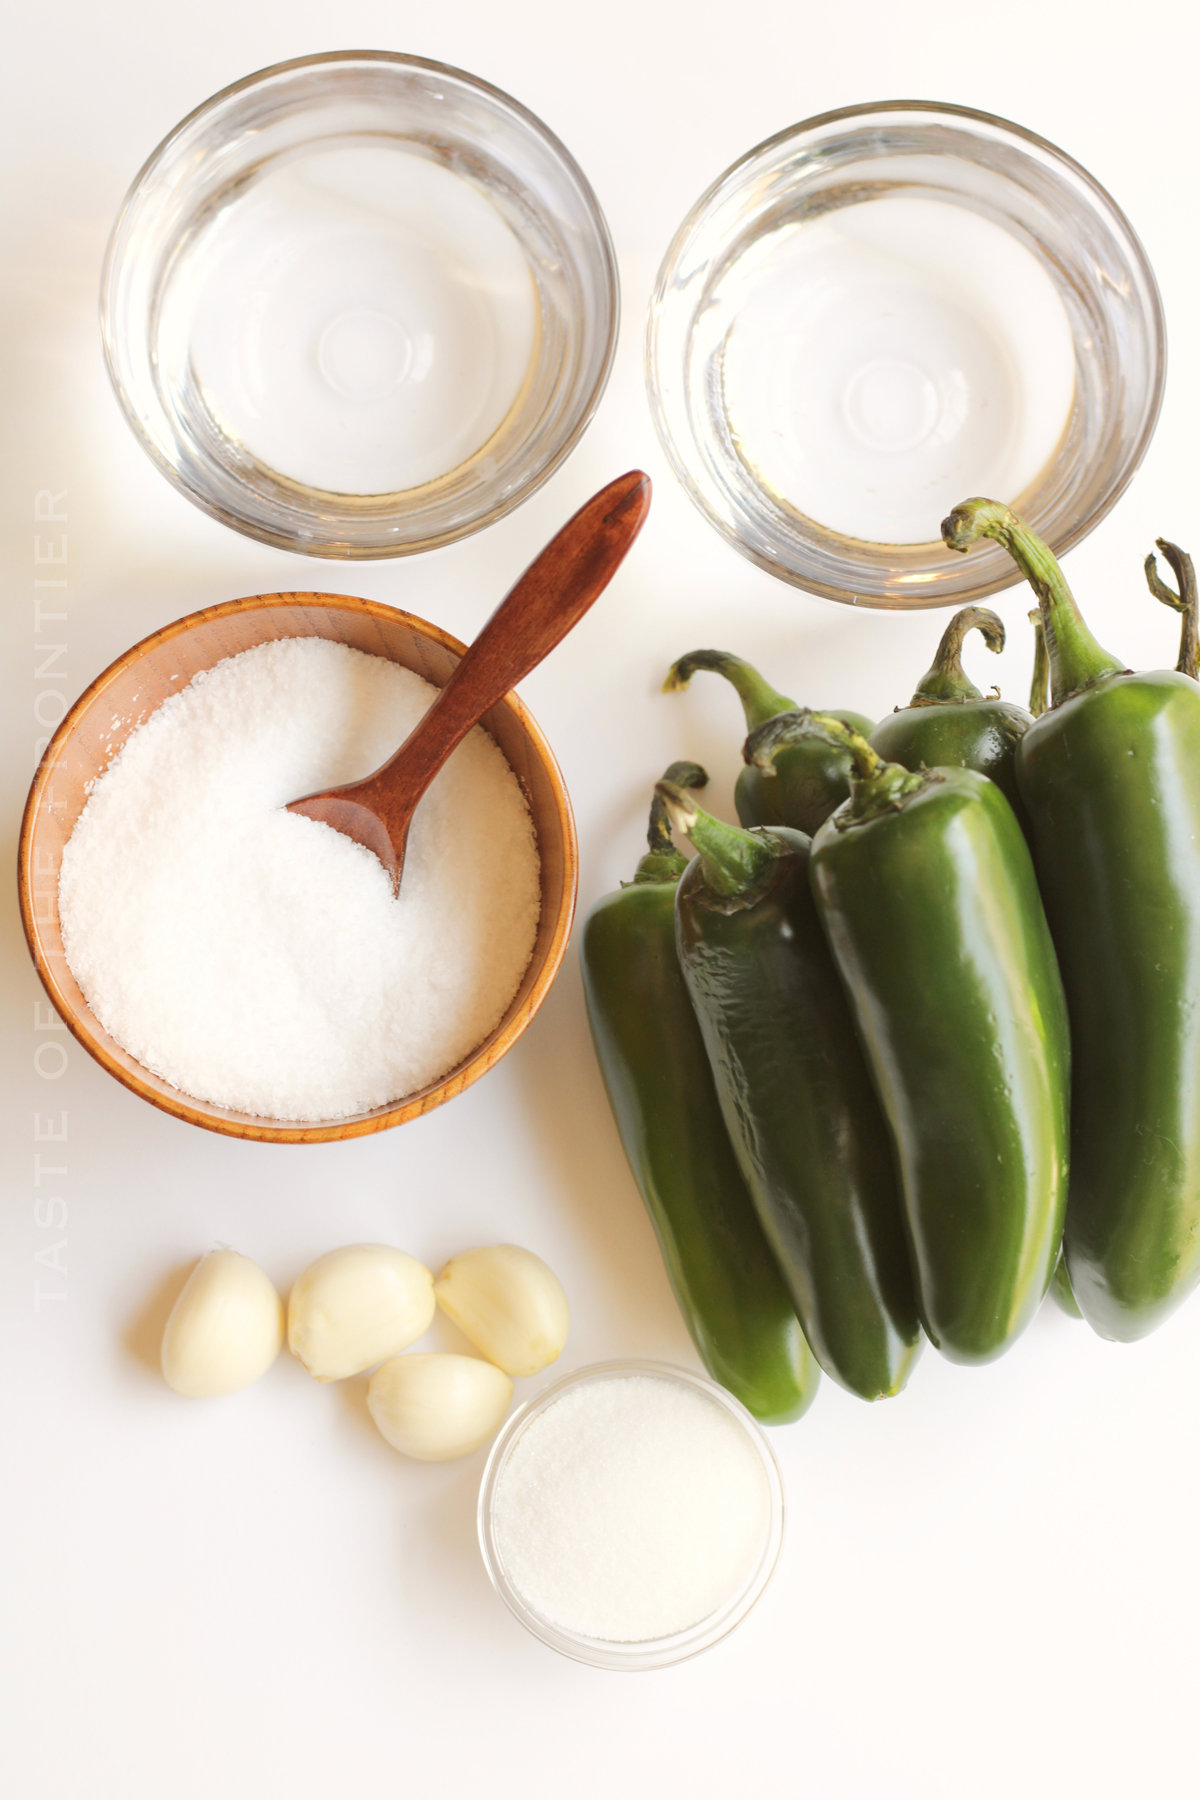 ingredients for Pickled Jalapenos